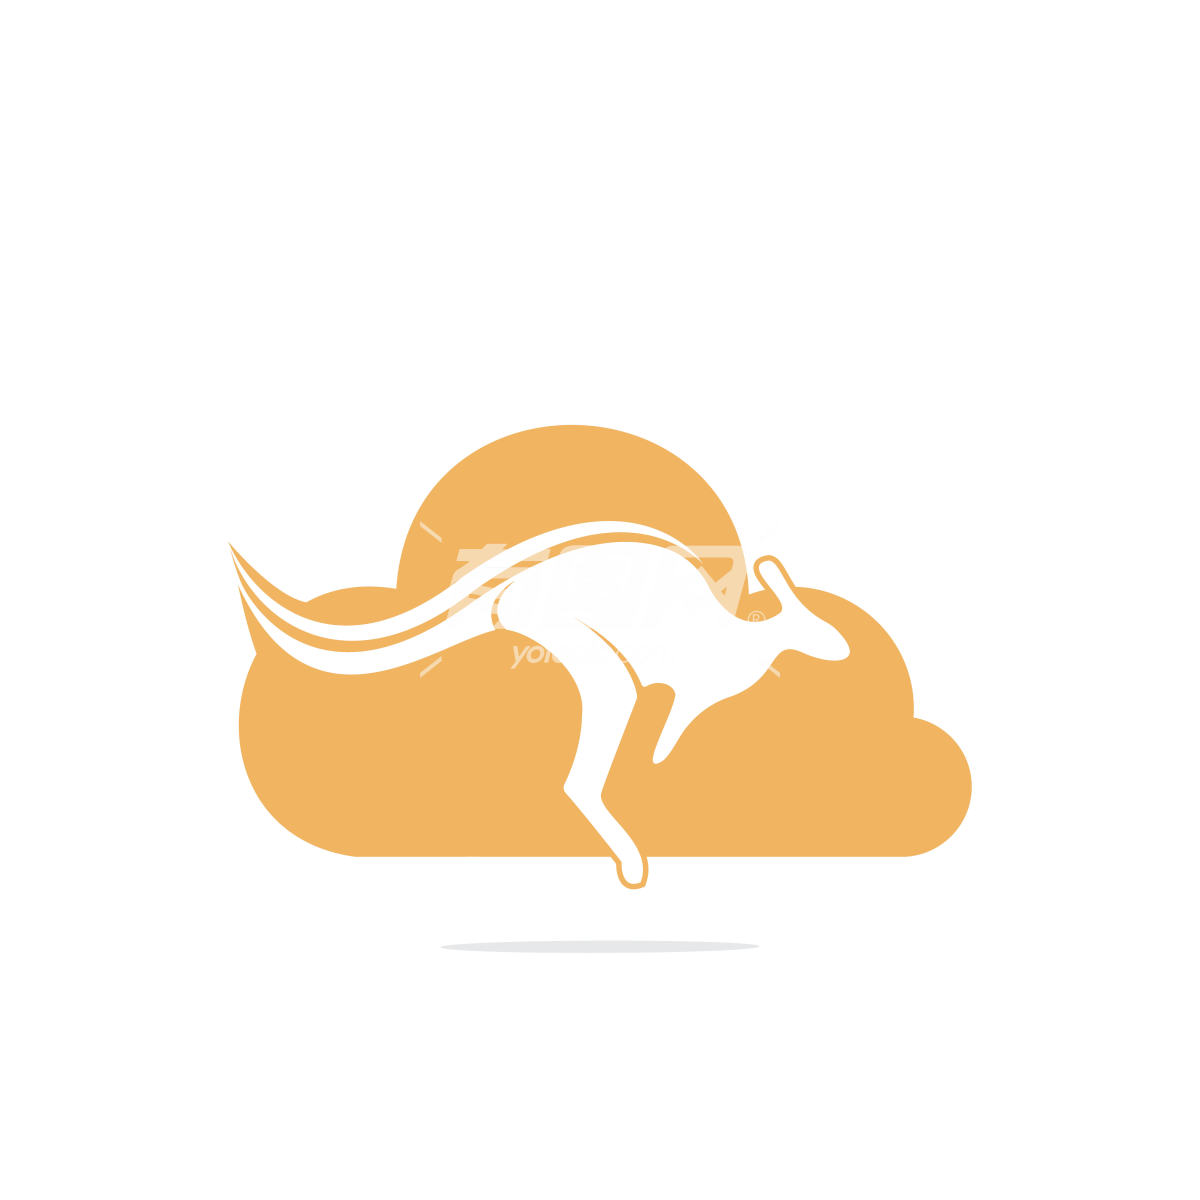 袋鼠在云端的标志设计